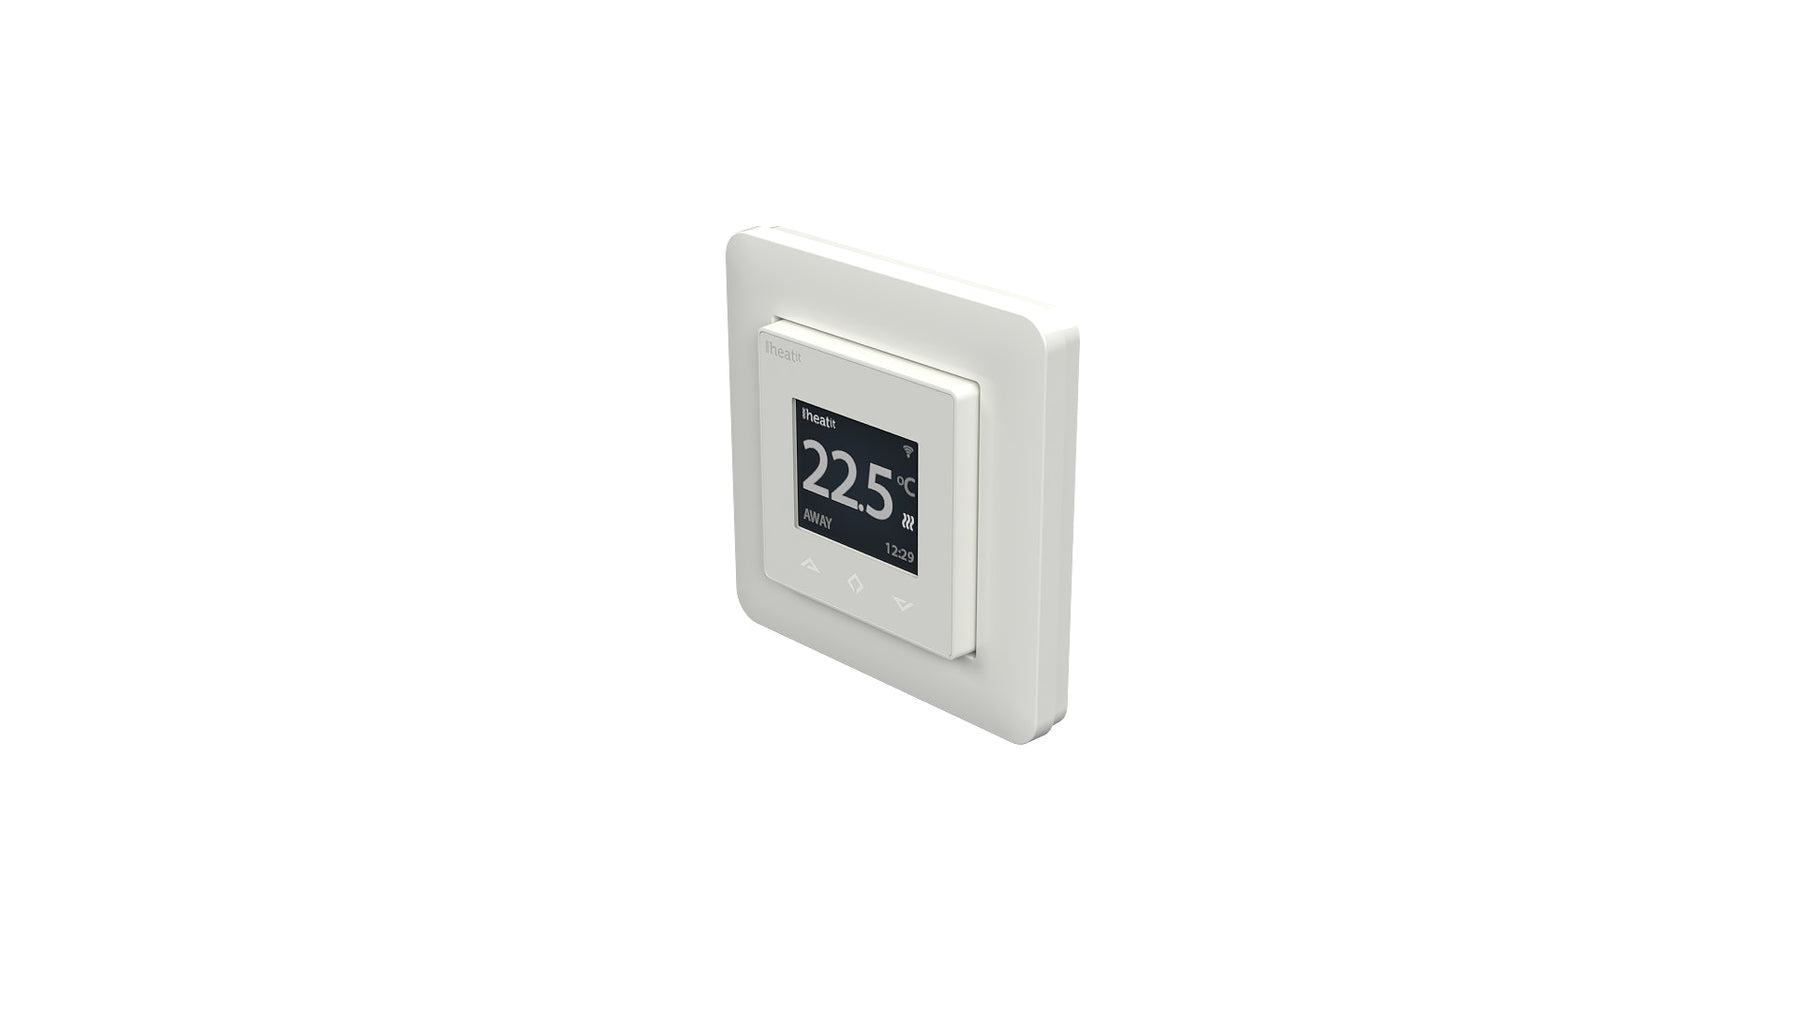 Heatit WiFi Thermostat 3600W 16A